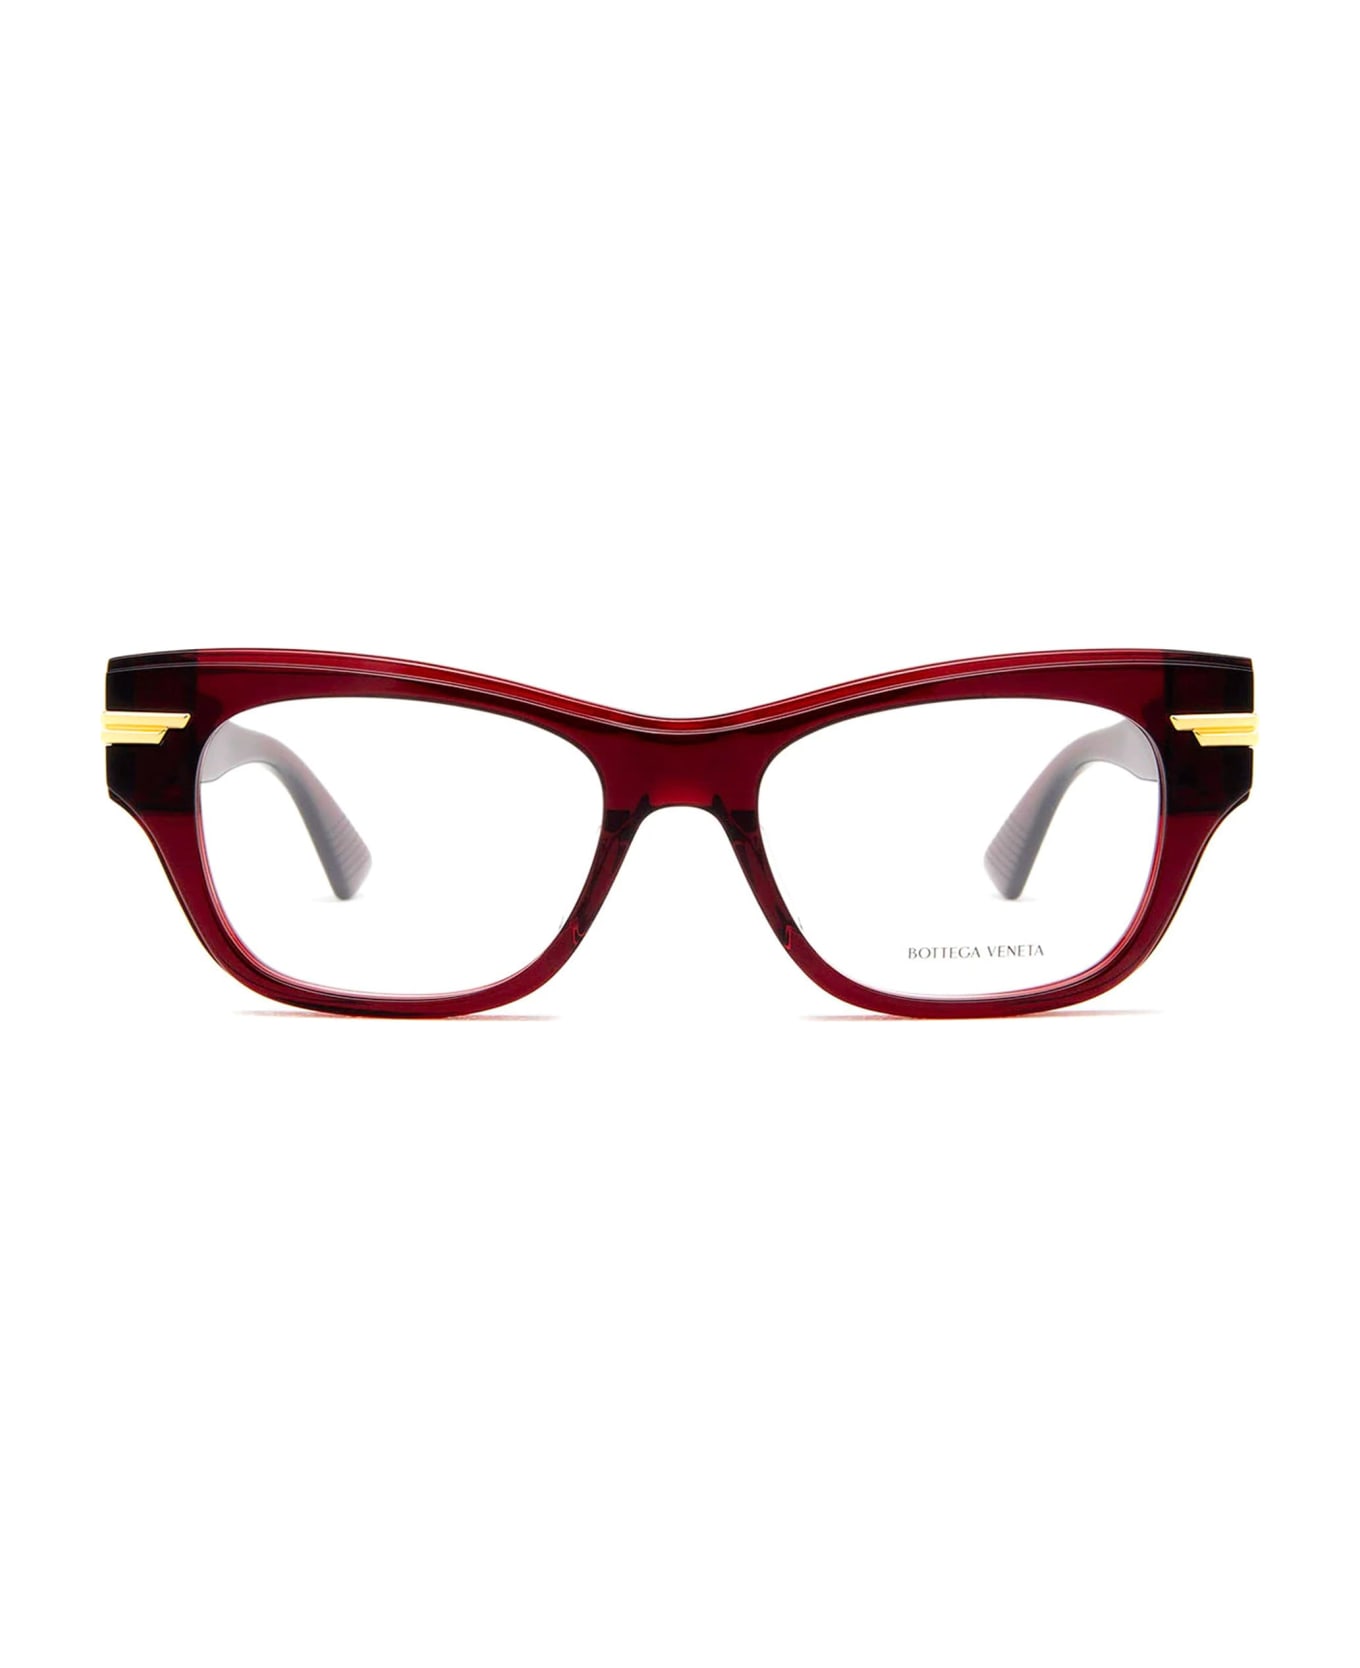 Bottega Veneta Eyewear Bv1152o-003 - Burgundy Glasses - burgundy アイウェア